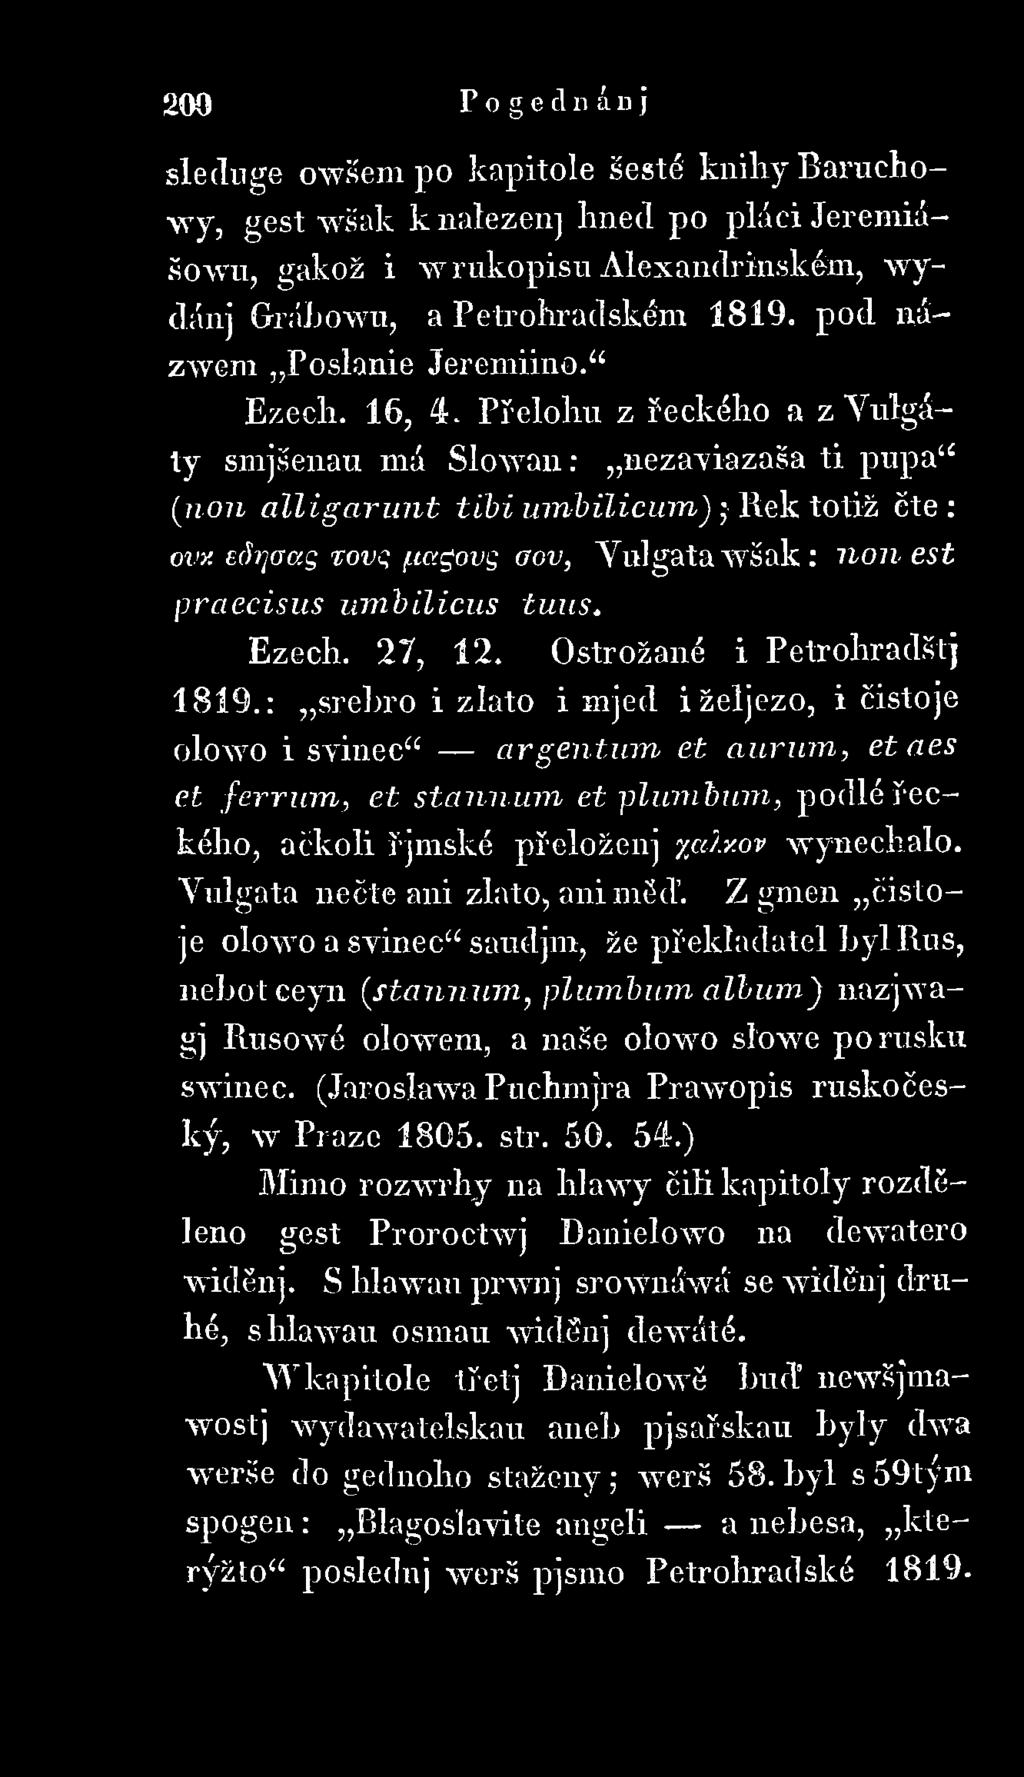 tagovg aov, Vulgát a w ša k : non est praecisus um bilicus tuus. Ezech. 27, 12. Ostrožané i Petrohradštj 1819.